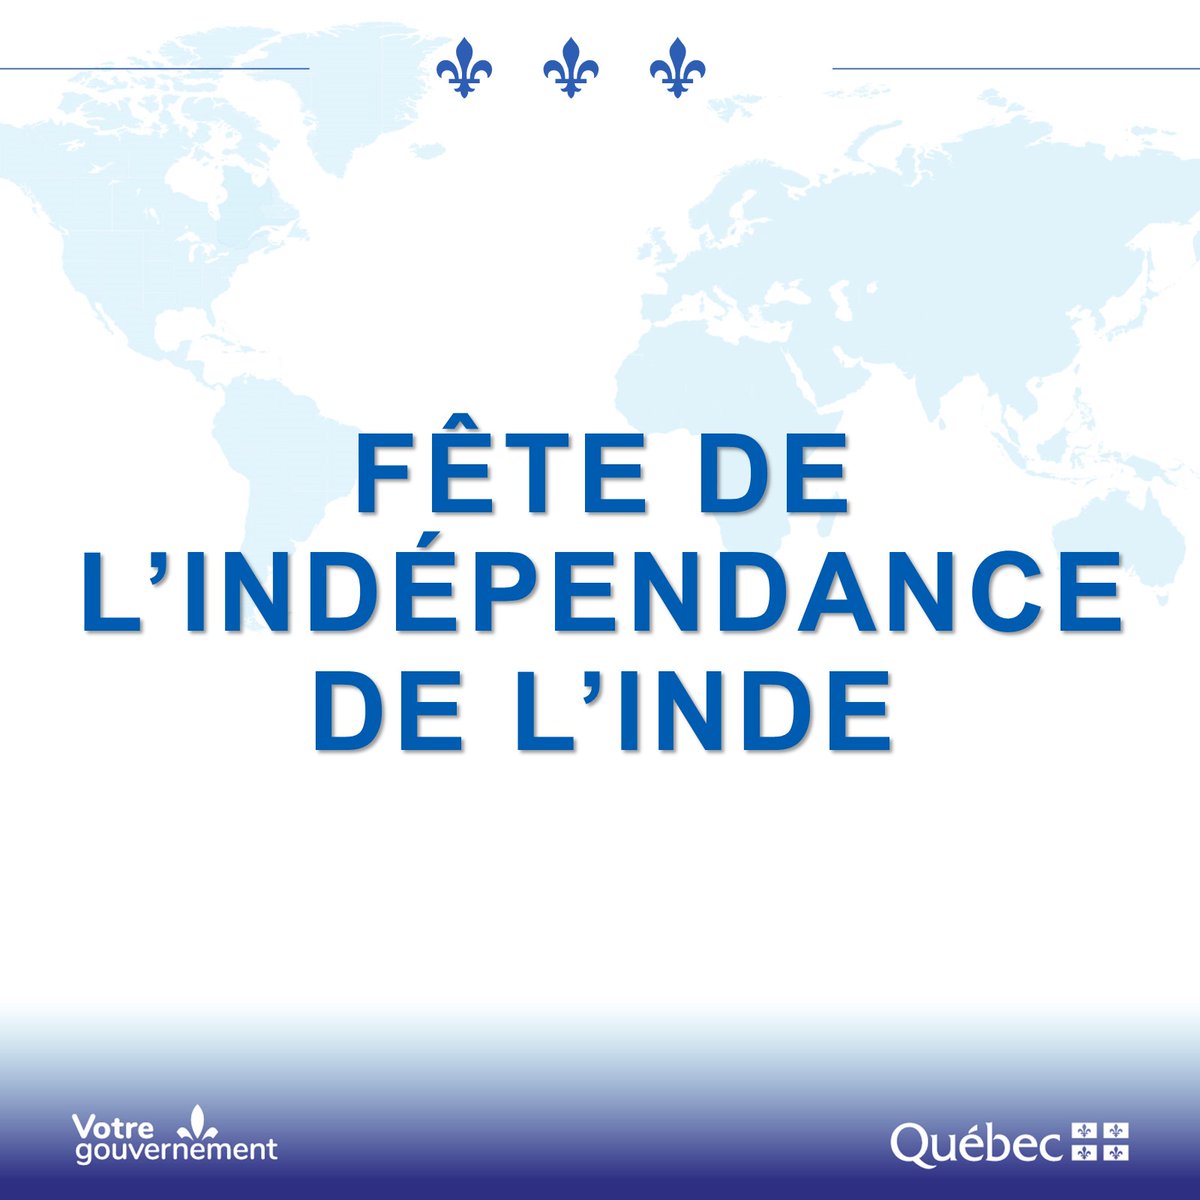 Bonne fête de l’Indépendance à tous les Indiens et Indiennes! 🇮🇳 🎉 Depuis 15 ans, notre bureau @QuebecIndia est fier de créer des liens durables entre l’Inde et le Québec!